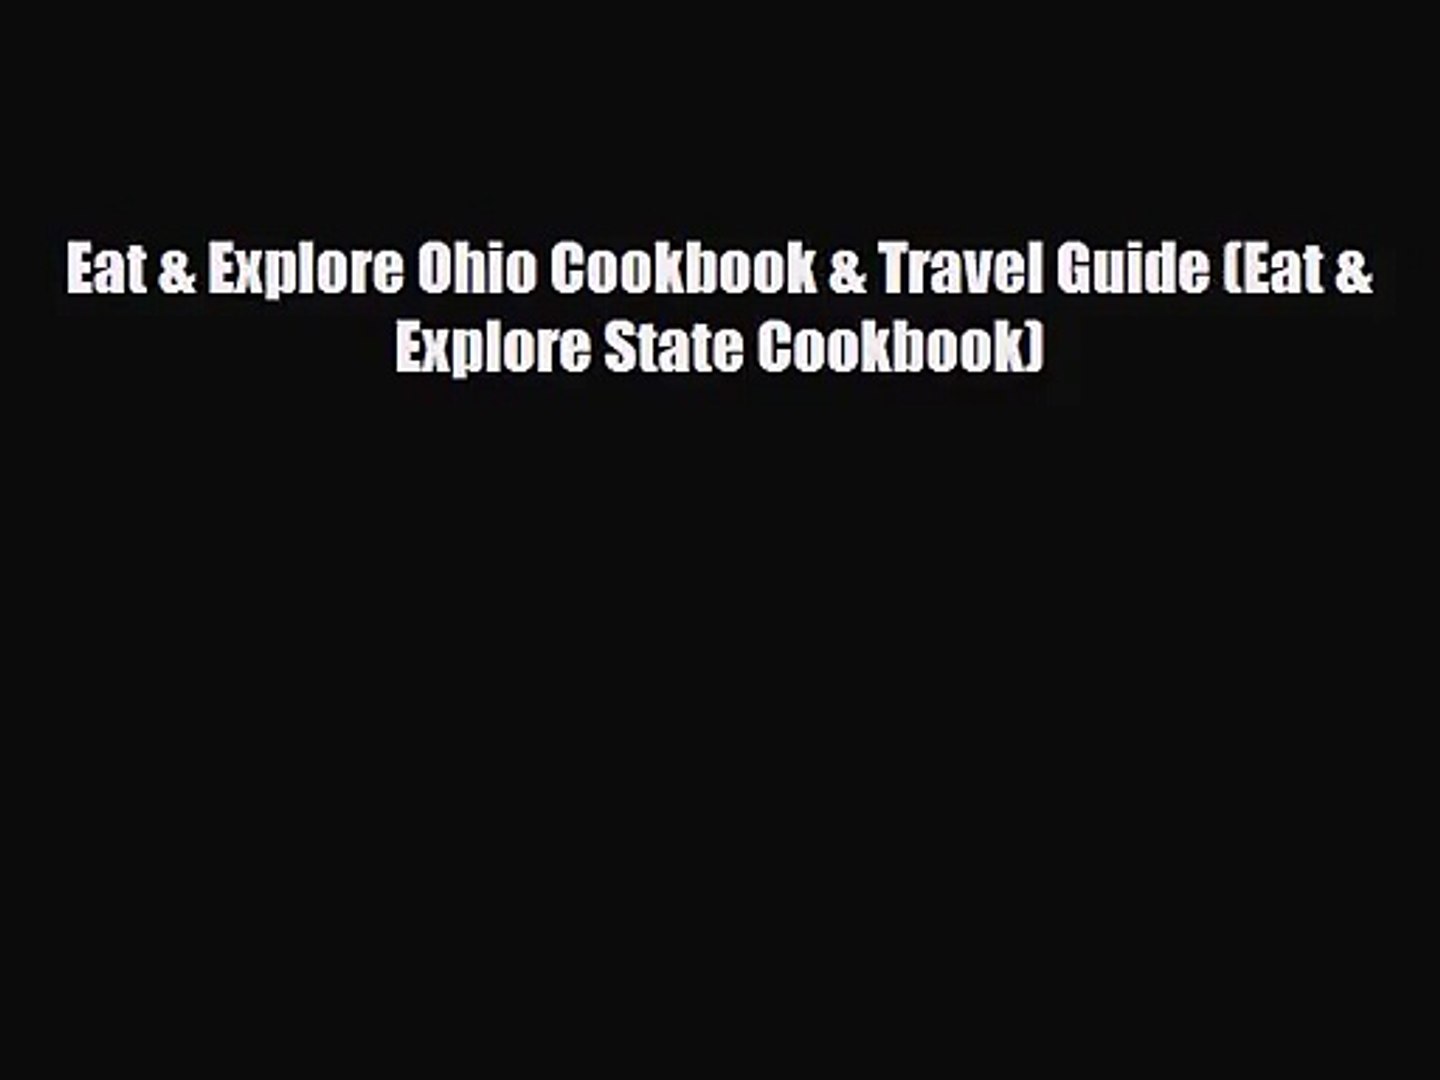 [PDF Download] Eat & Explore Ohio Cookbook & Travel Guide (Eat & Explore State Cookbook)